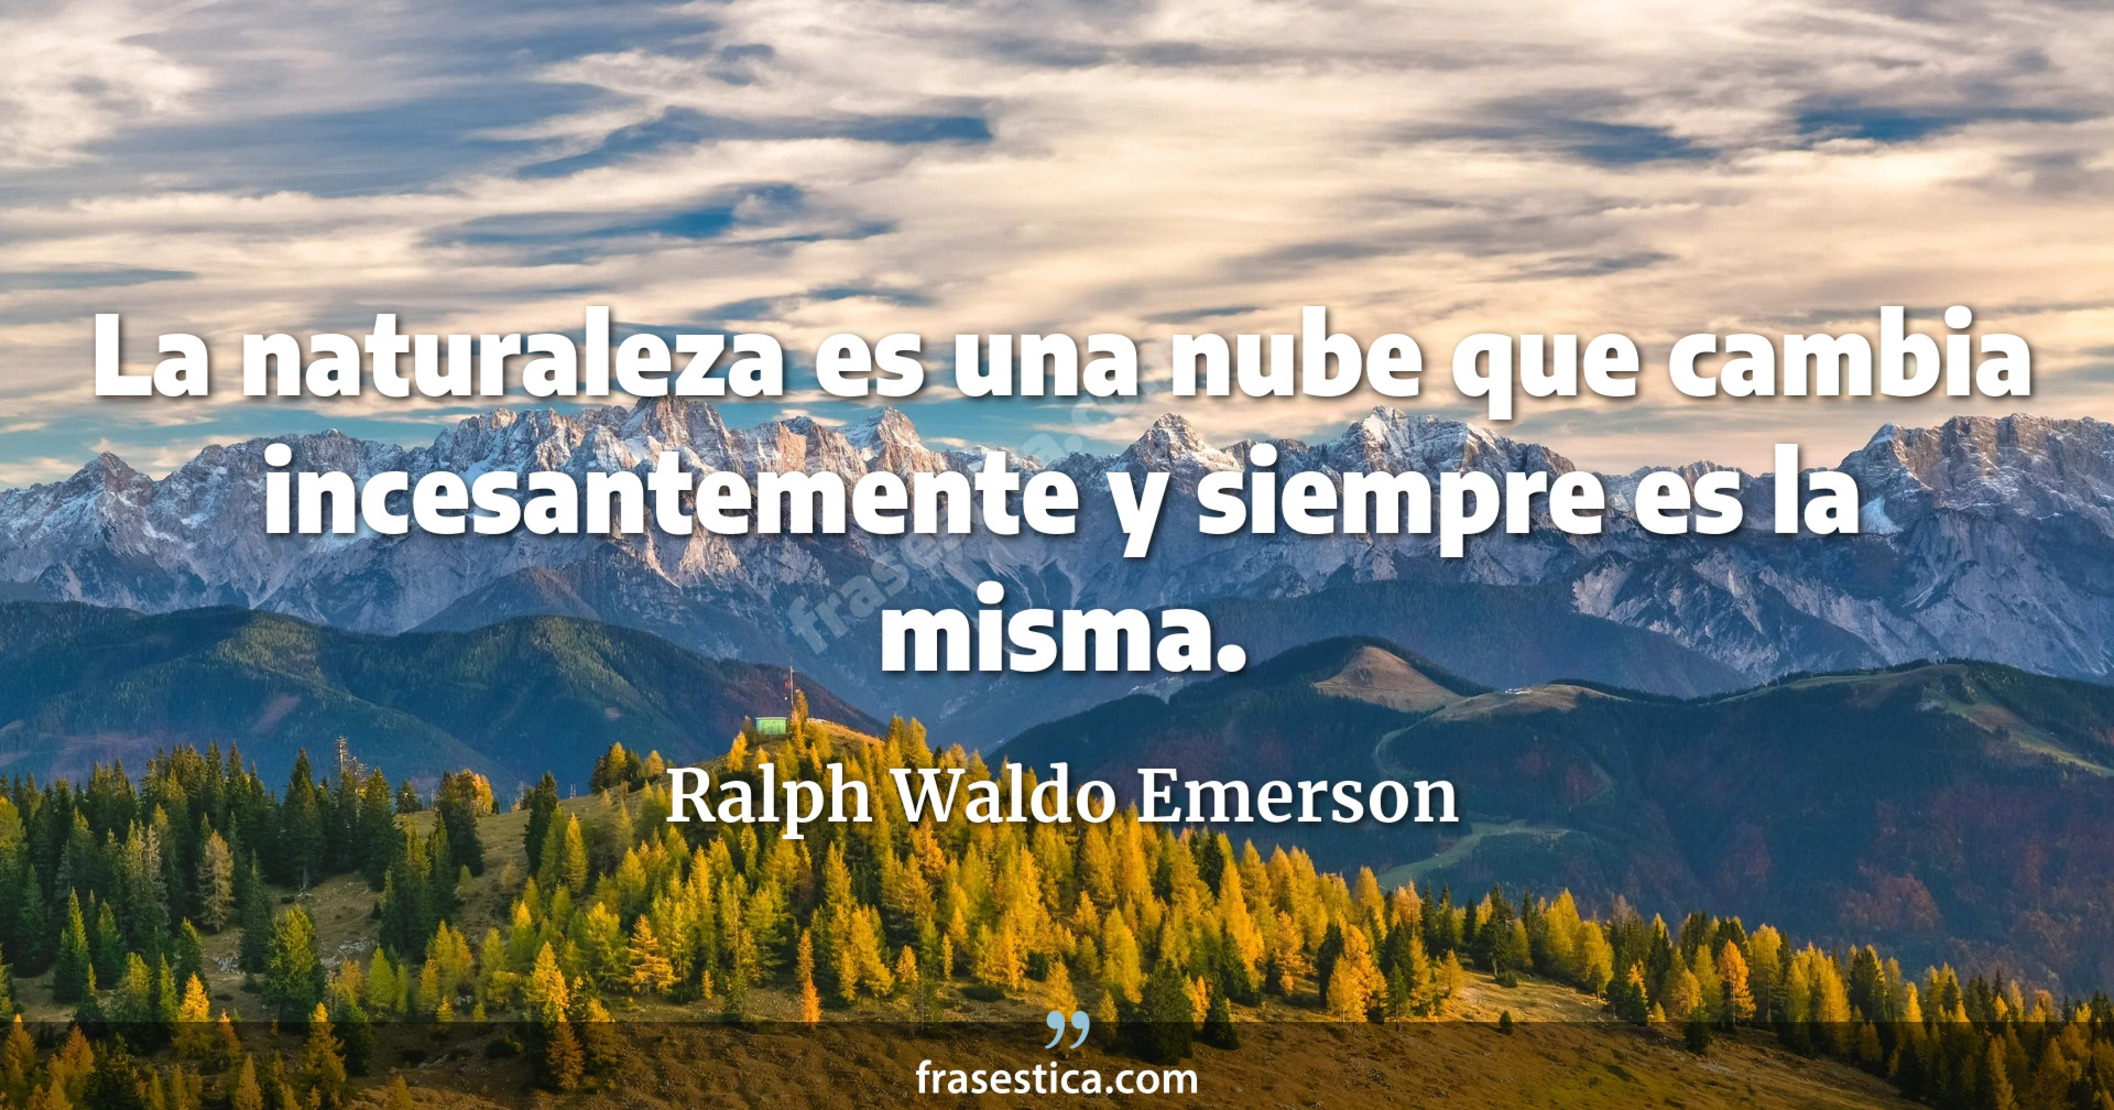 La naturaleza es una nube que cambia incesantemente y siempre es la misma. - Ralph Waldo Emerson